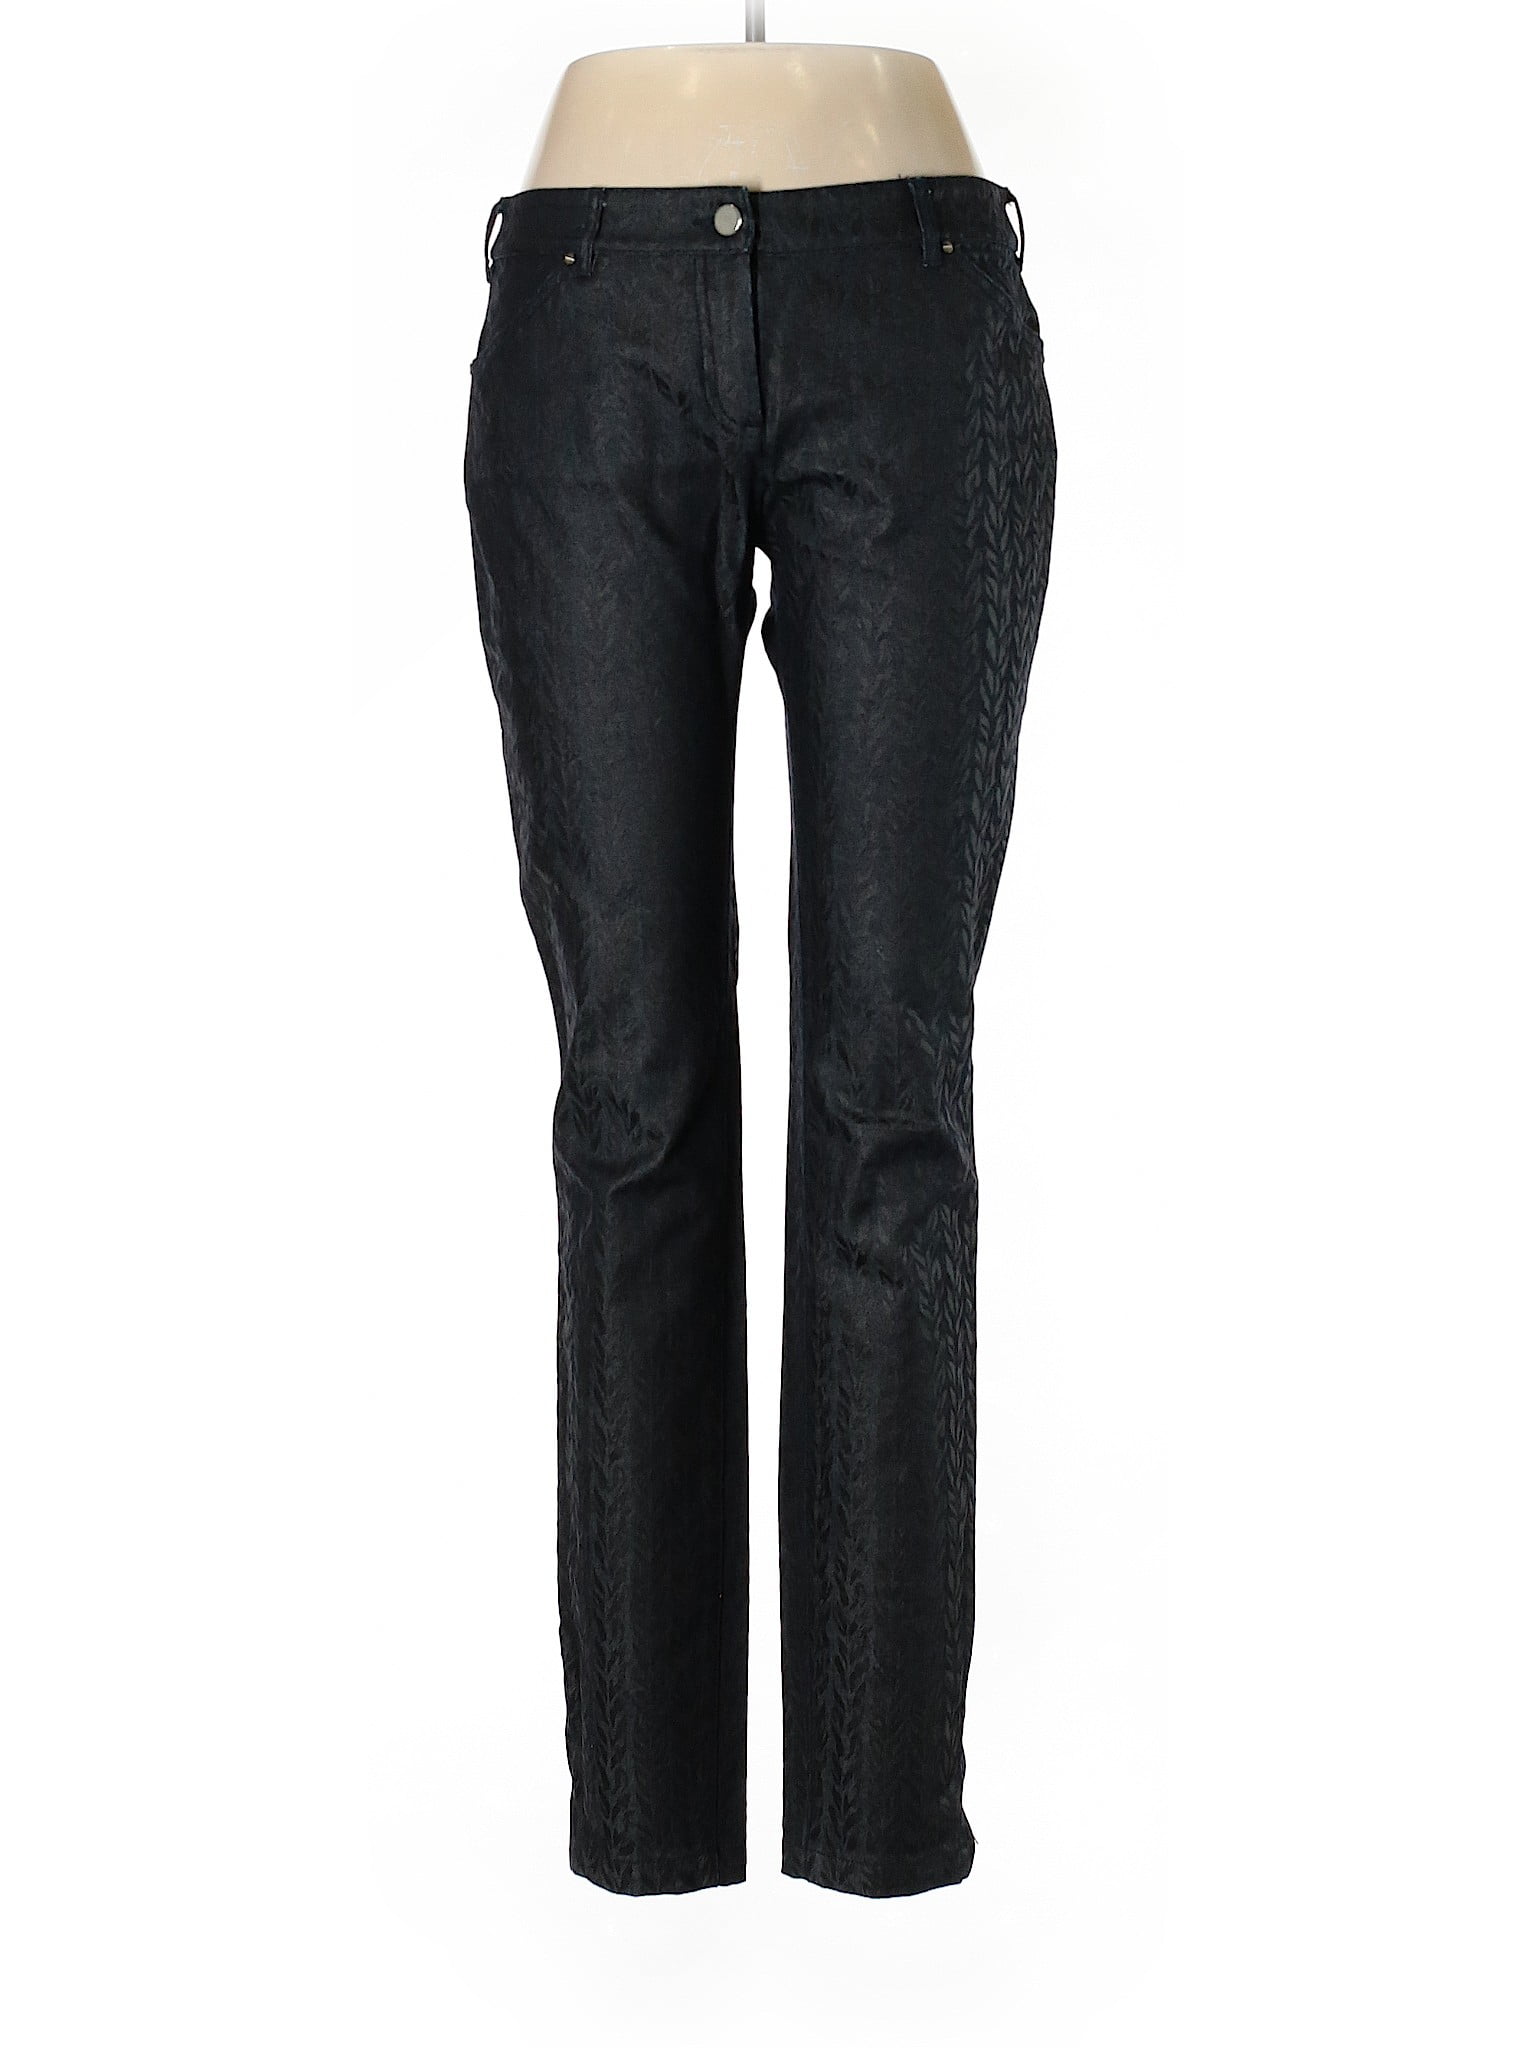 Balenciaga - Pre-Owned Balenciaga Women's Size 42 Jeans - Walmart.com ...